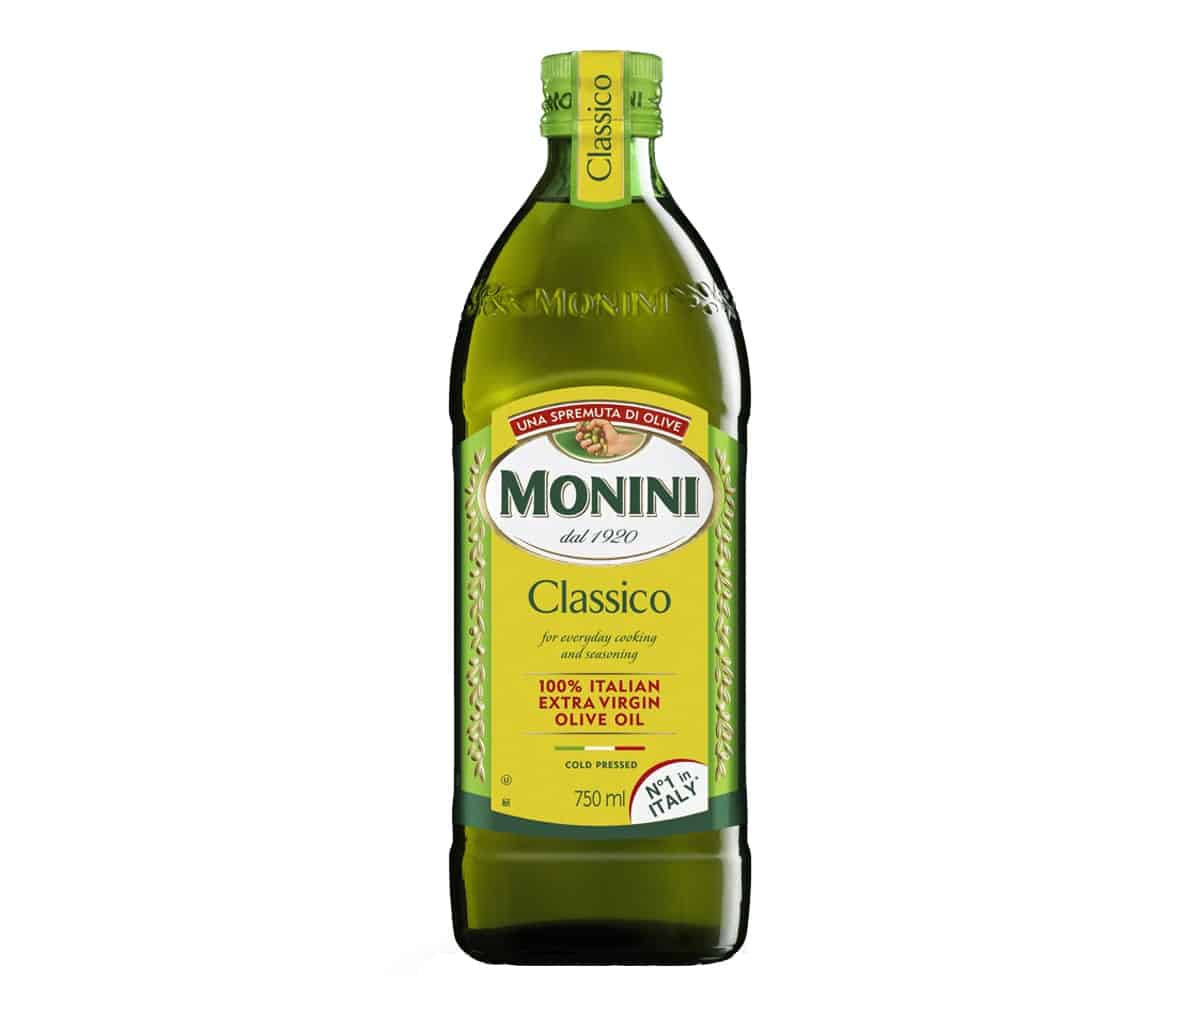 Рафинированное оливковое масло для салата. Оливковое масло Classico 250 ml. Monini оливковое масло. Масло оливковое Monini нерафиниро. Monini оливковое масло PNG.